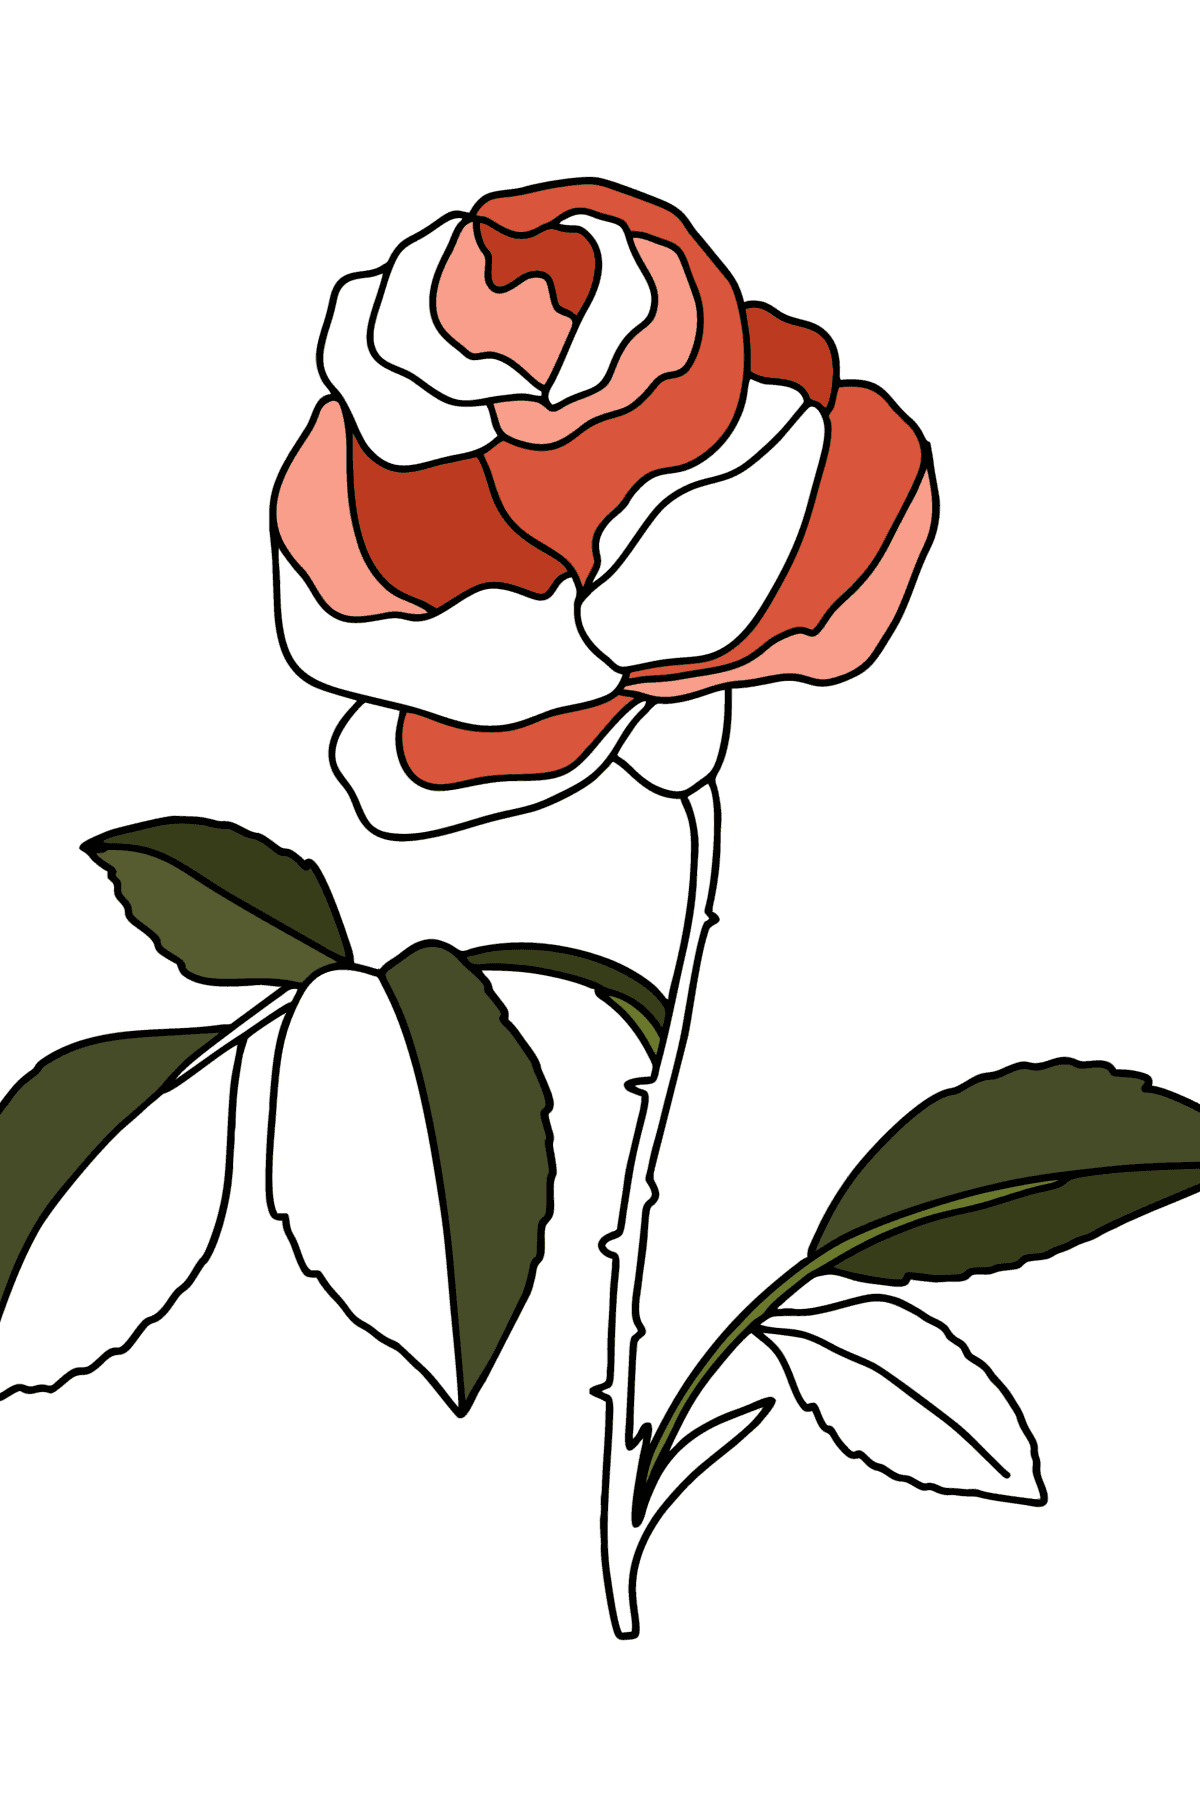 Kolorowanka Czerwona róża - Kolorowanki dla dzieci